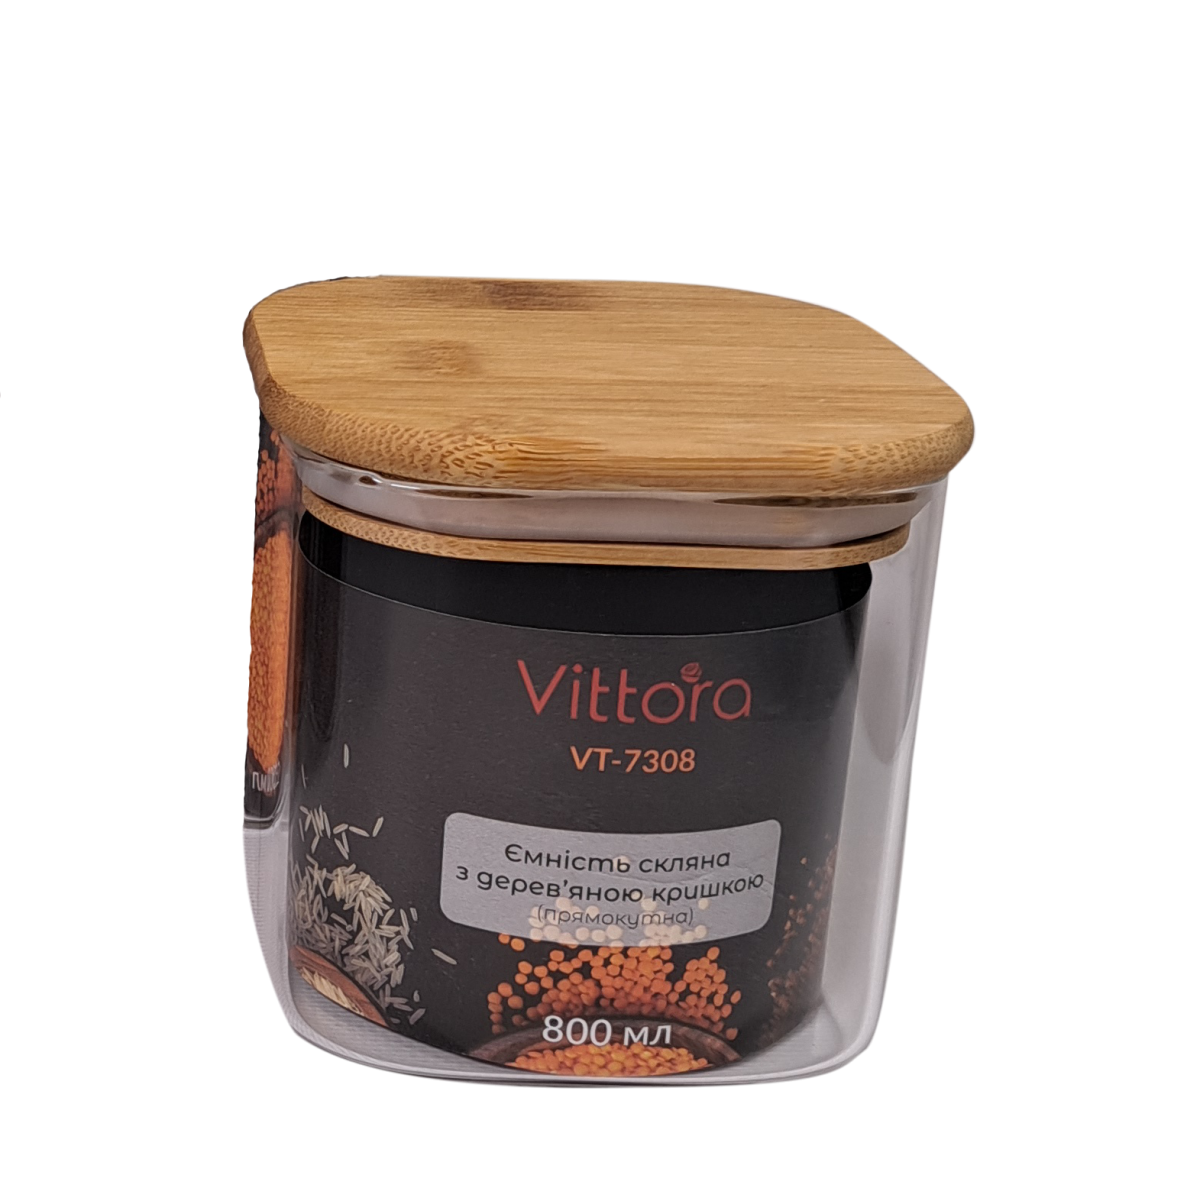 Ємність скляна з дерев'яною кришкою прямокутна VT-7308 Vittora 800 мл